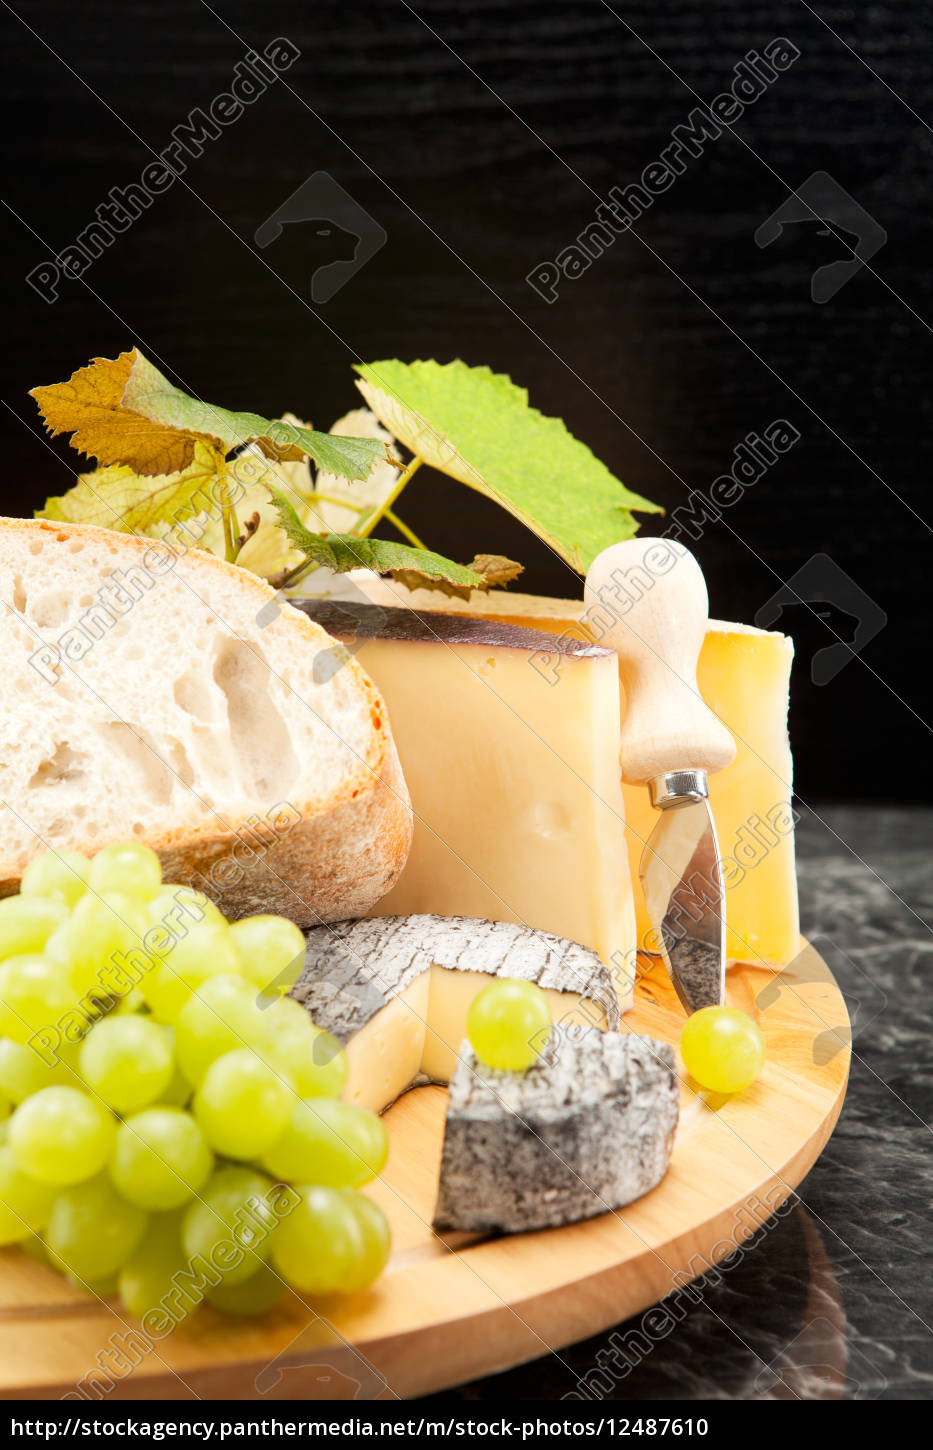 Käseplatte mit Weintrauben und Weissbrot - Stock Photo - #12487610 ...